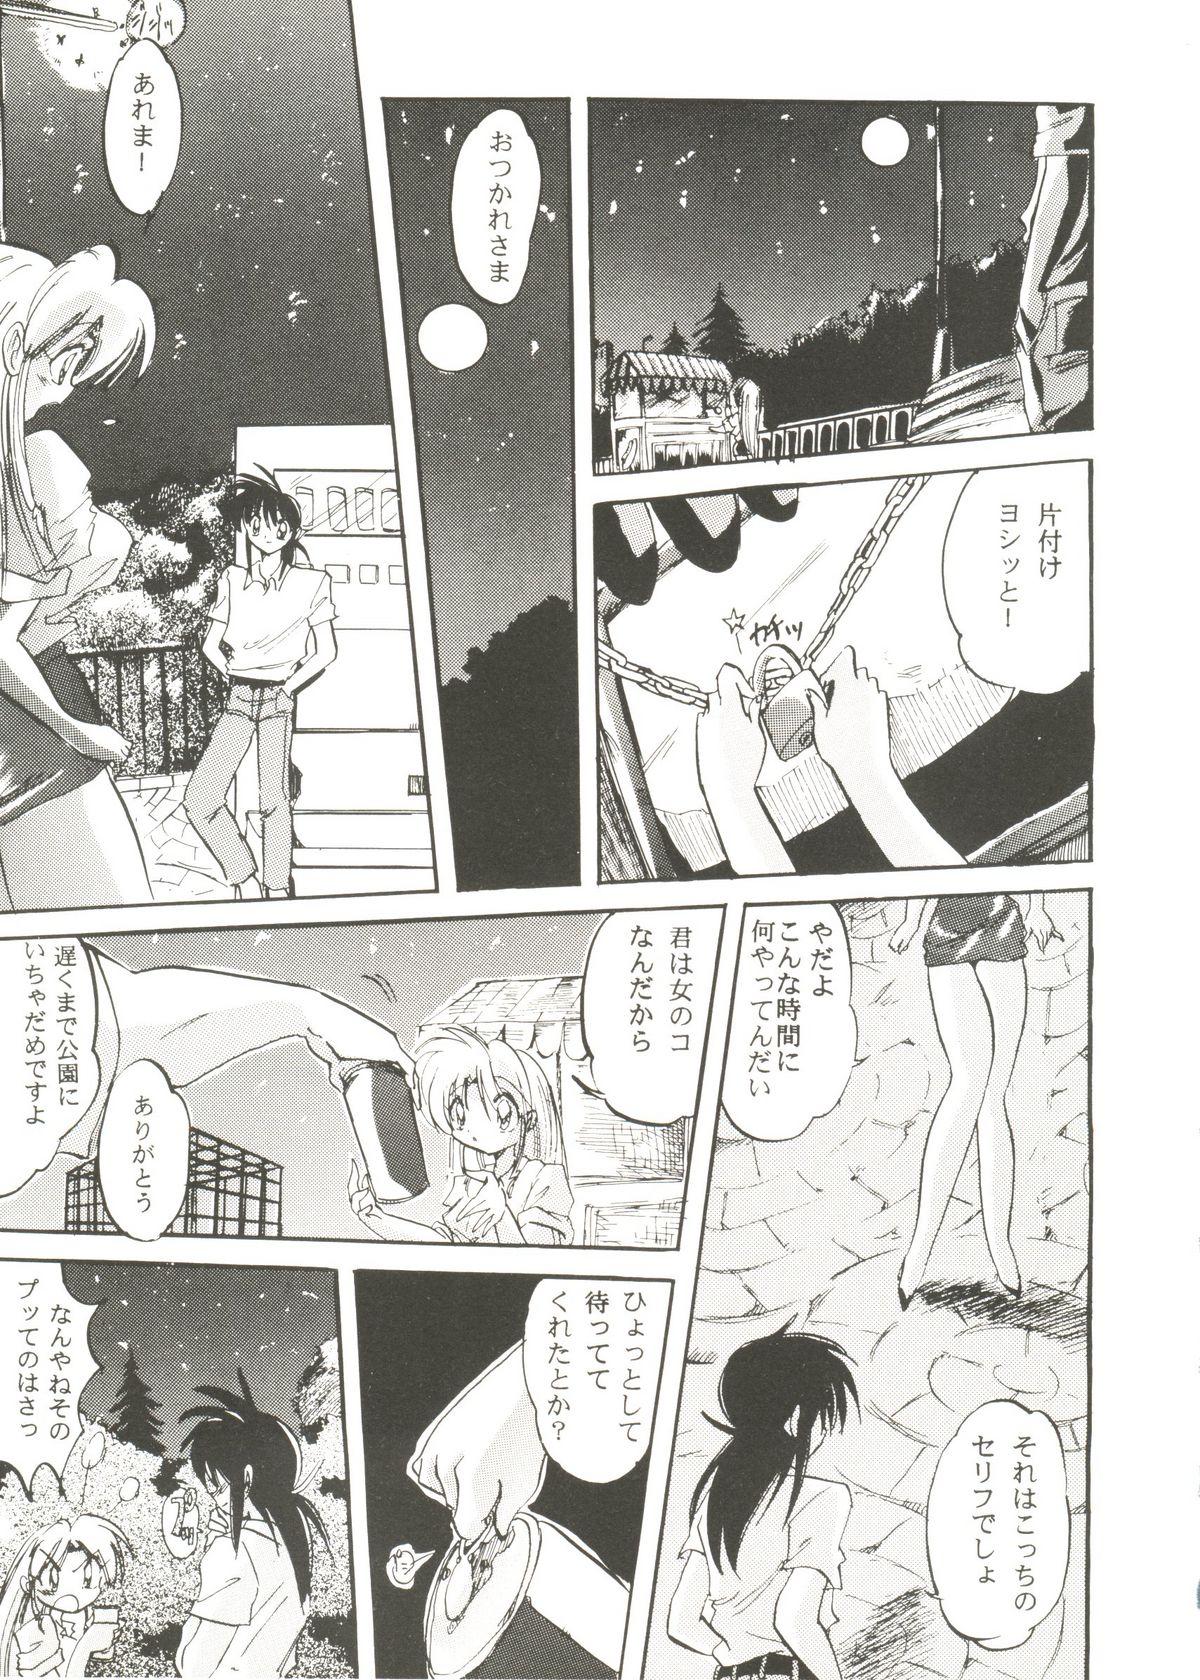 Booty Bishoujo Doujinshi Anthology Cute 3 - Mamotte shugogetten Fancy lala Yu yu hakusho True love story Short - Page 9